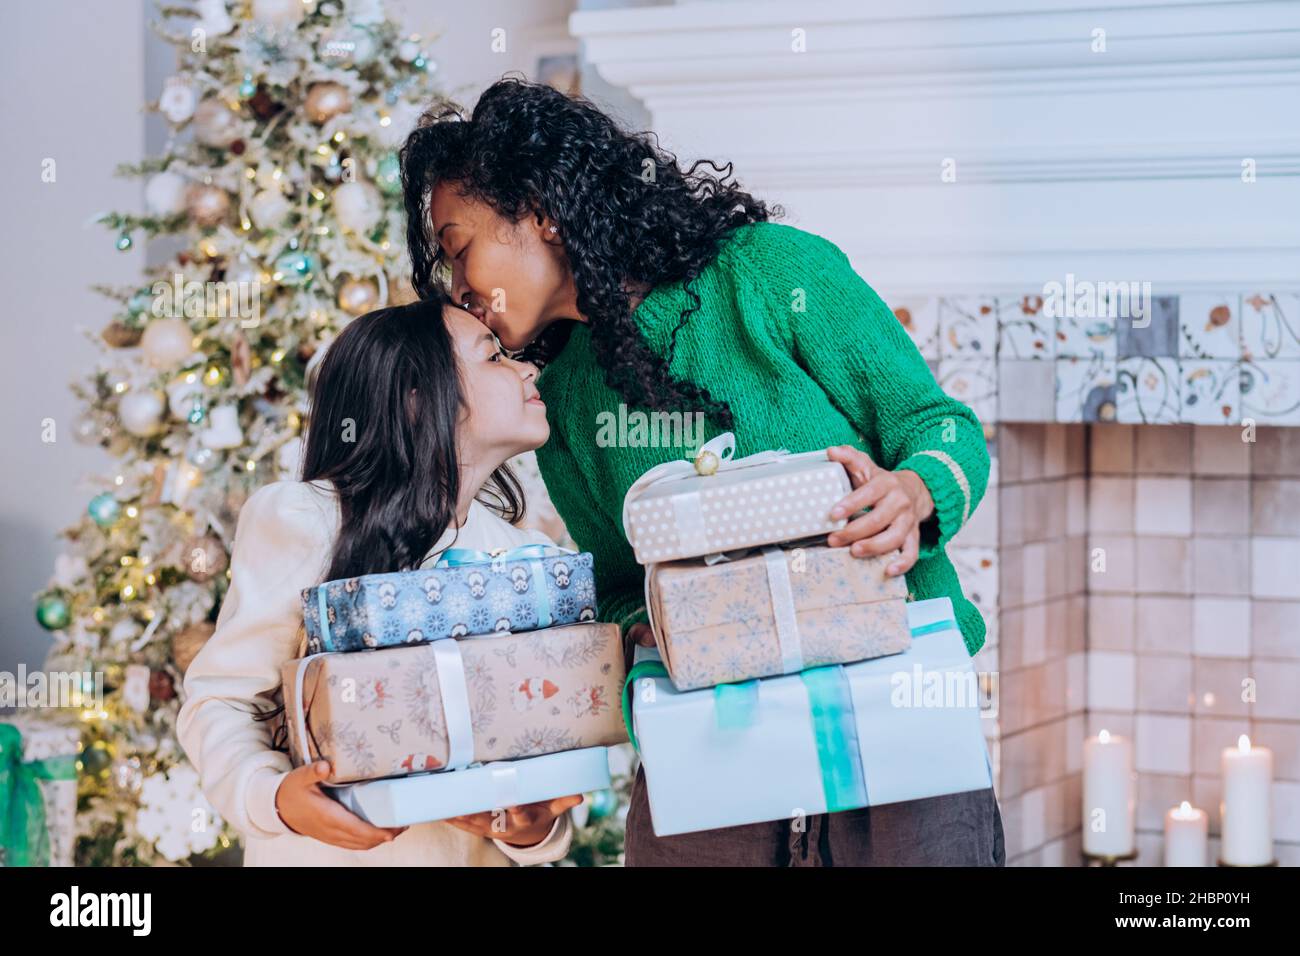 afroamerikanische Mutter in grünem Pullover und Tochter mit dunklem langen Haar stehen mit weihnachtsgeschenken in der Nähe des weihnachtsbaums, Mutter küsst Tochter auf die Stirn Stockfoto